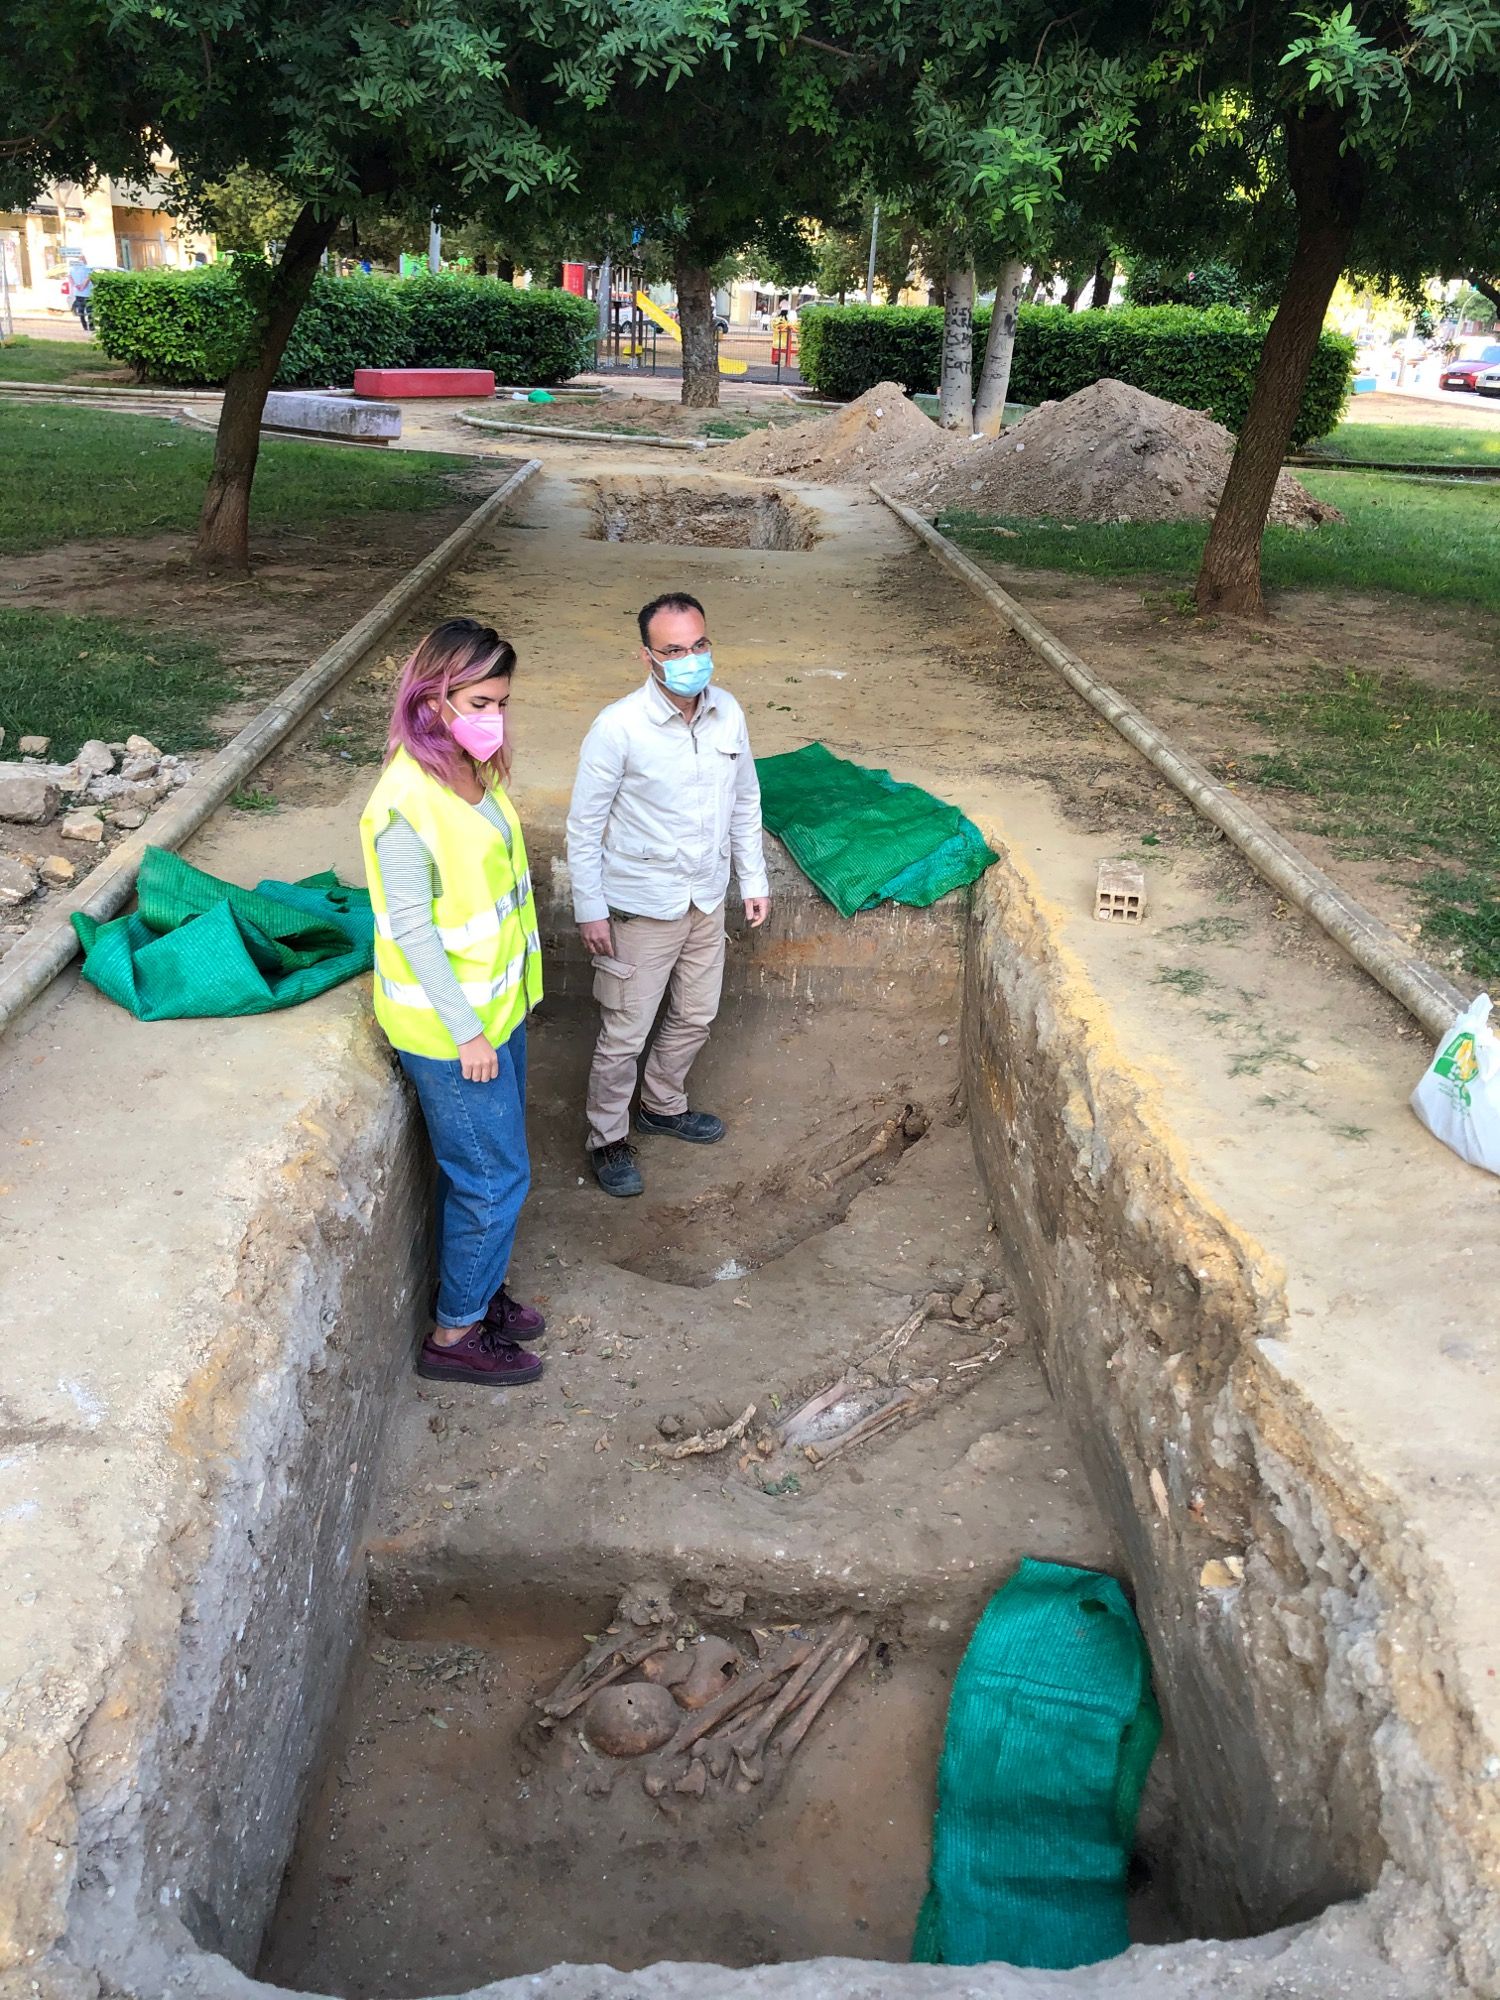 Jorge Cepillo y una de las voluntarias, en una de las catas recientes en el Parque Scout, en busca de restos de asesinados por el franquismo.